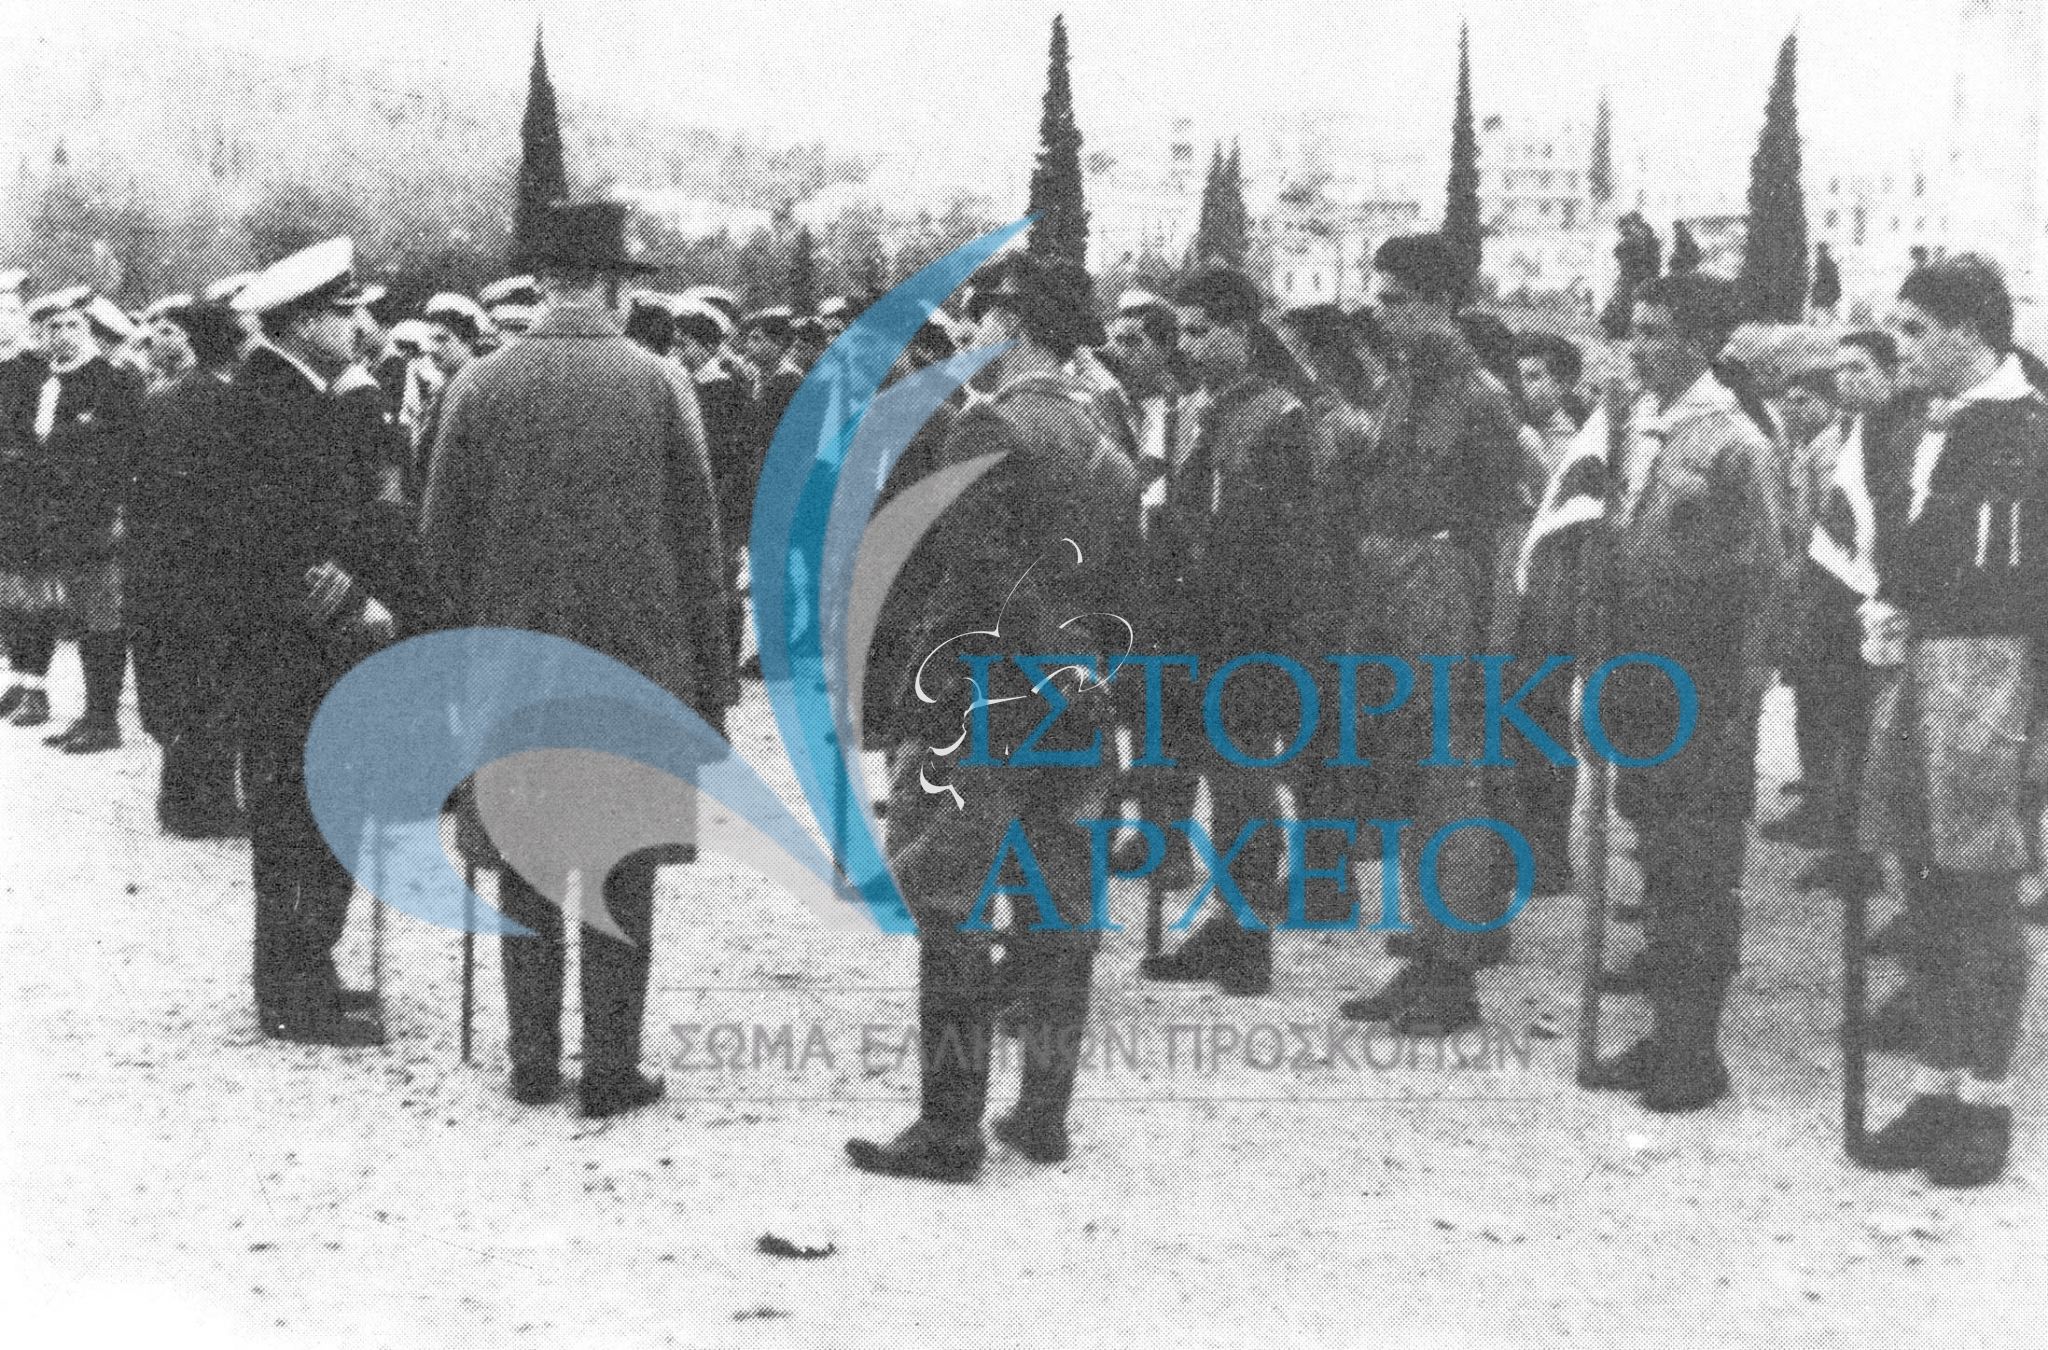 Οι πρόσκοποι της Αθήνας φορούν ξανά τις στολές τους για την πρώτη μεταπολεμική επιθεώρηση των ενωμοτιών τους μετά την Απελευθέρωση.